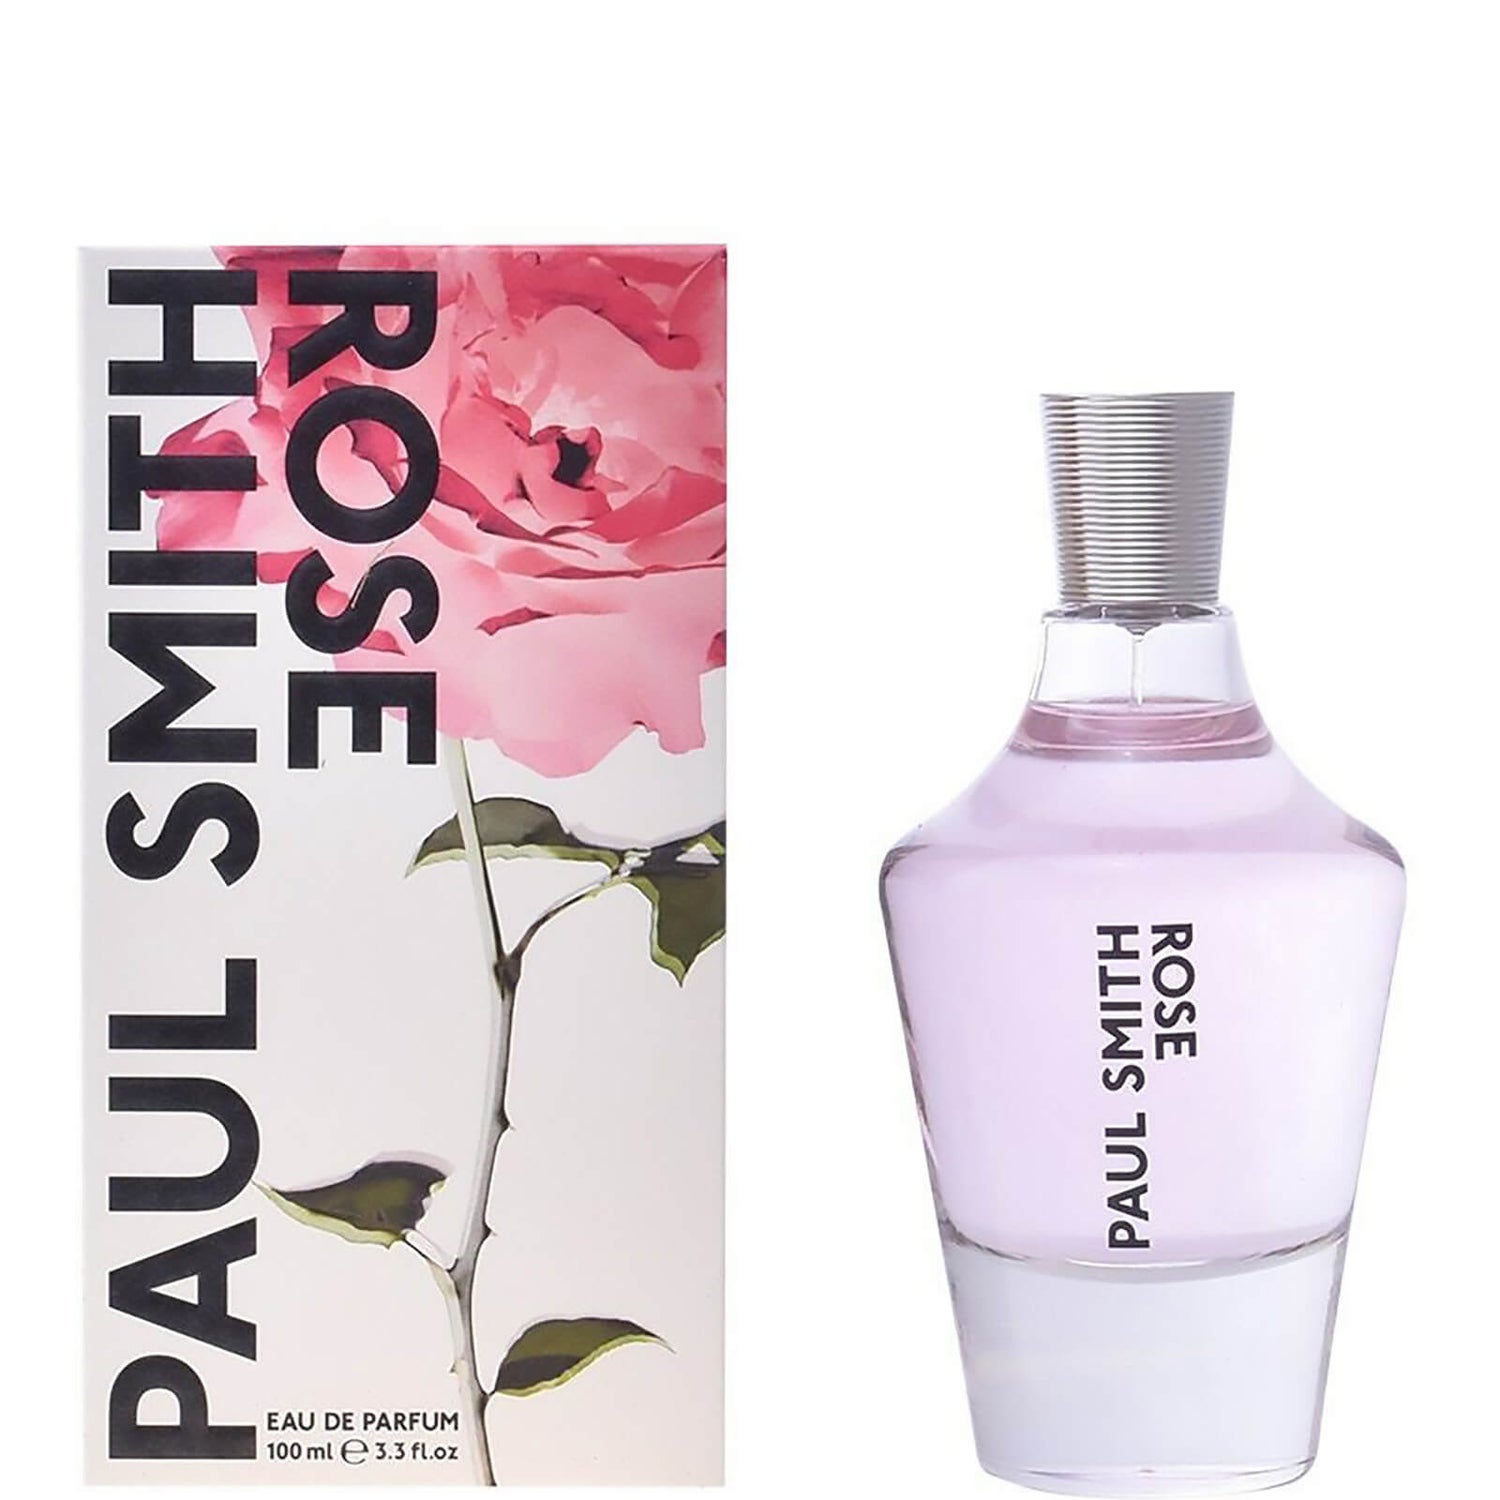 Paul Smith Rose Eau de Parfum 100ml